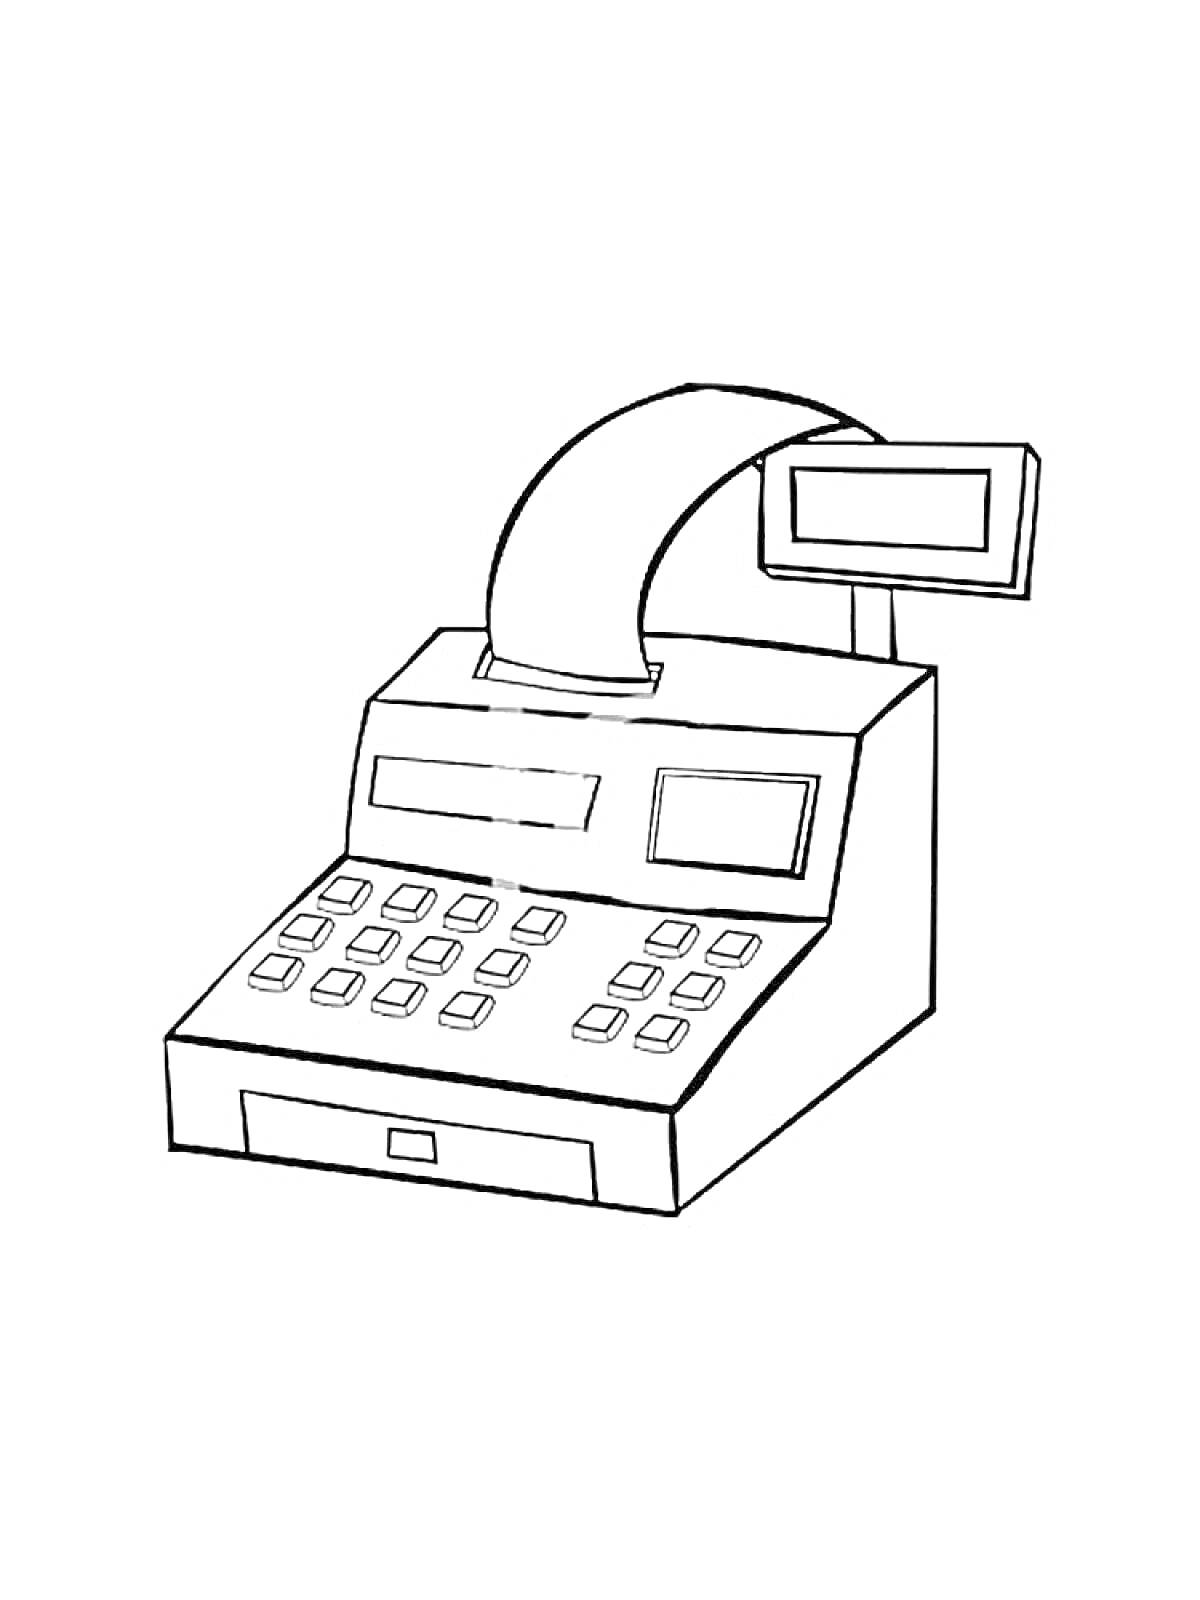 Раскраска Кассовый аппарат с дисплеем, клавиатурой и рулоном бумаги